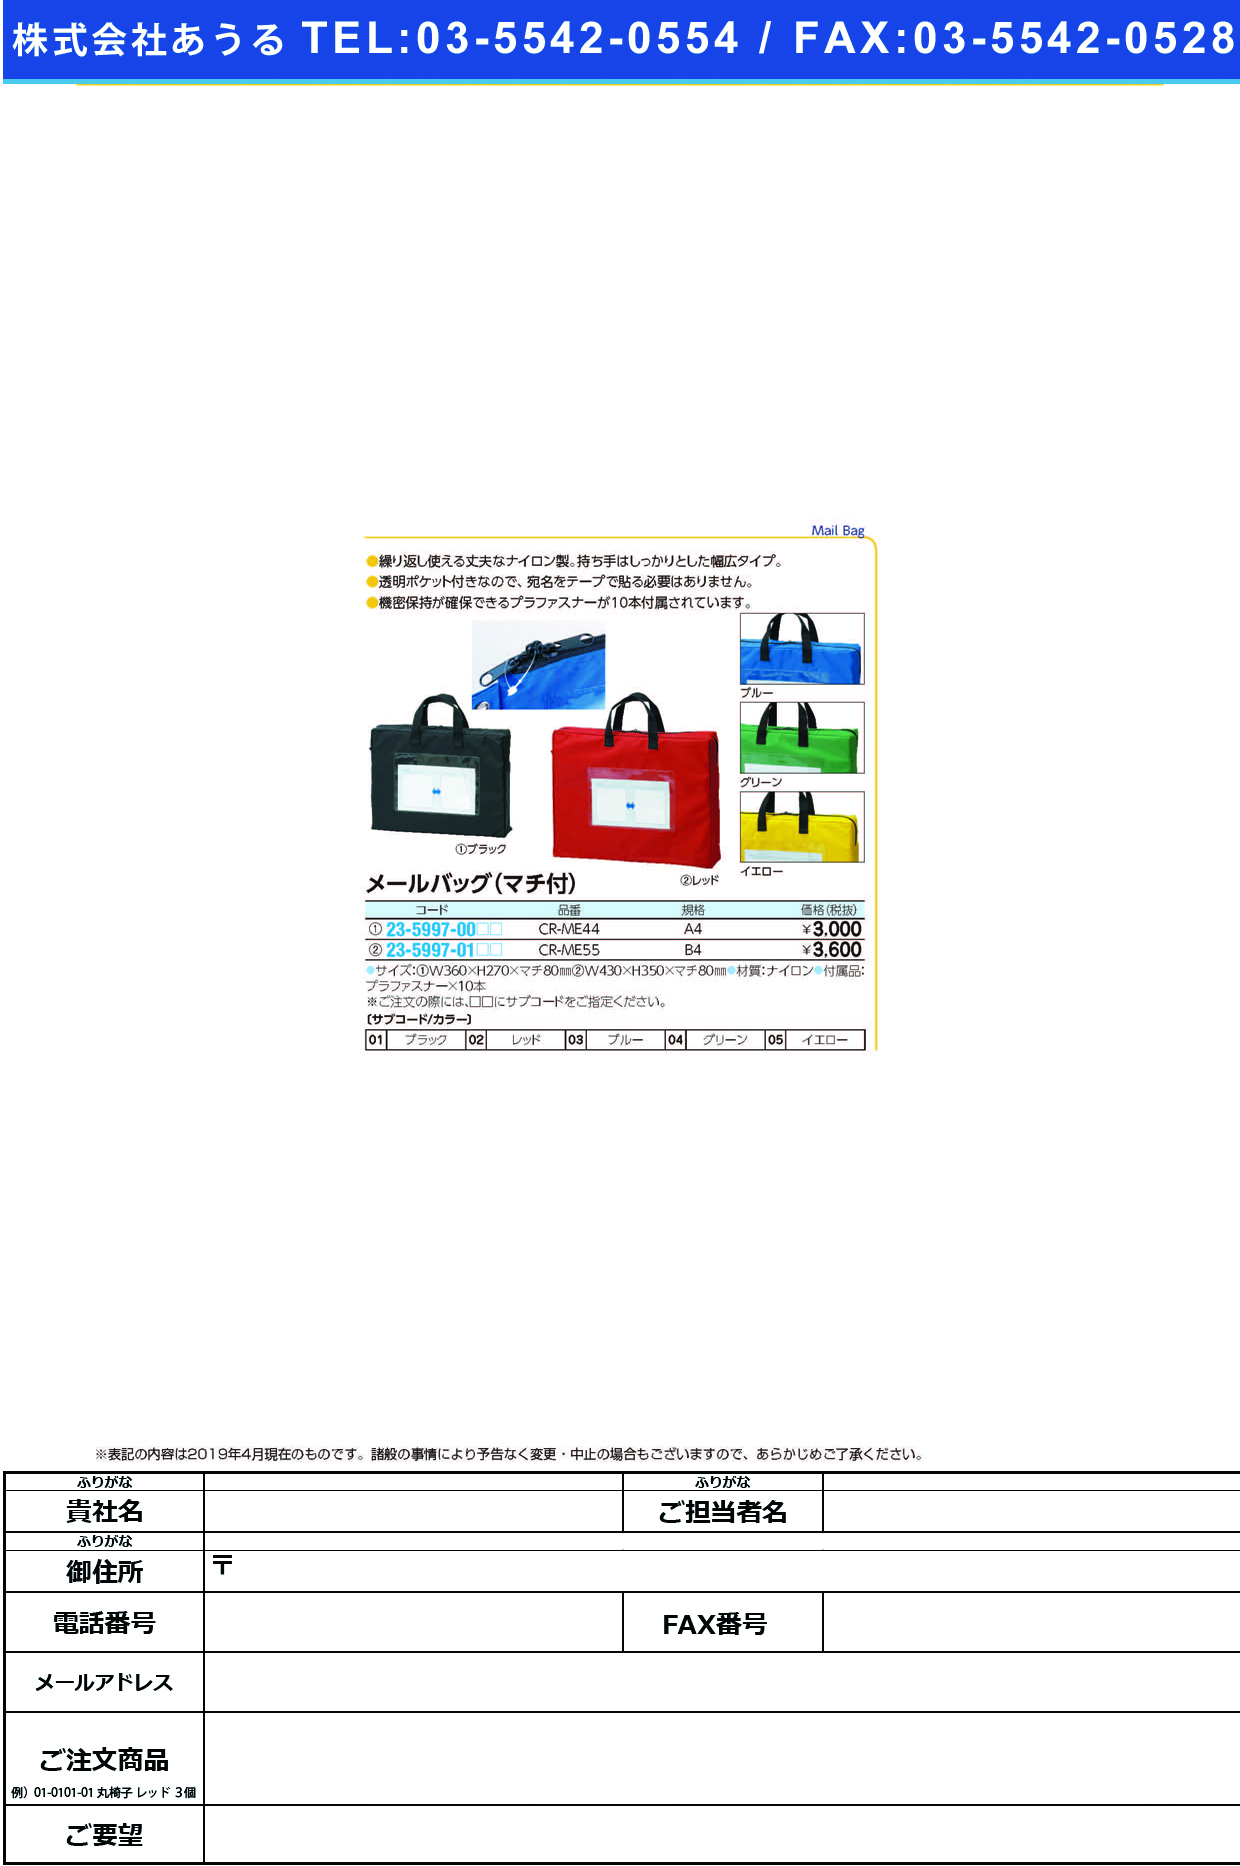 (23-5997-00)メールバッグ（マチ付） CR-ME44(A4) ﾒｰﾙﾊﾞｯｸﾞ(ﾏﾁﾂｷ) ブラック【1個単位】【2019年カタログ商品】